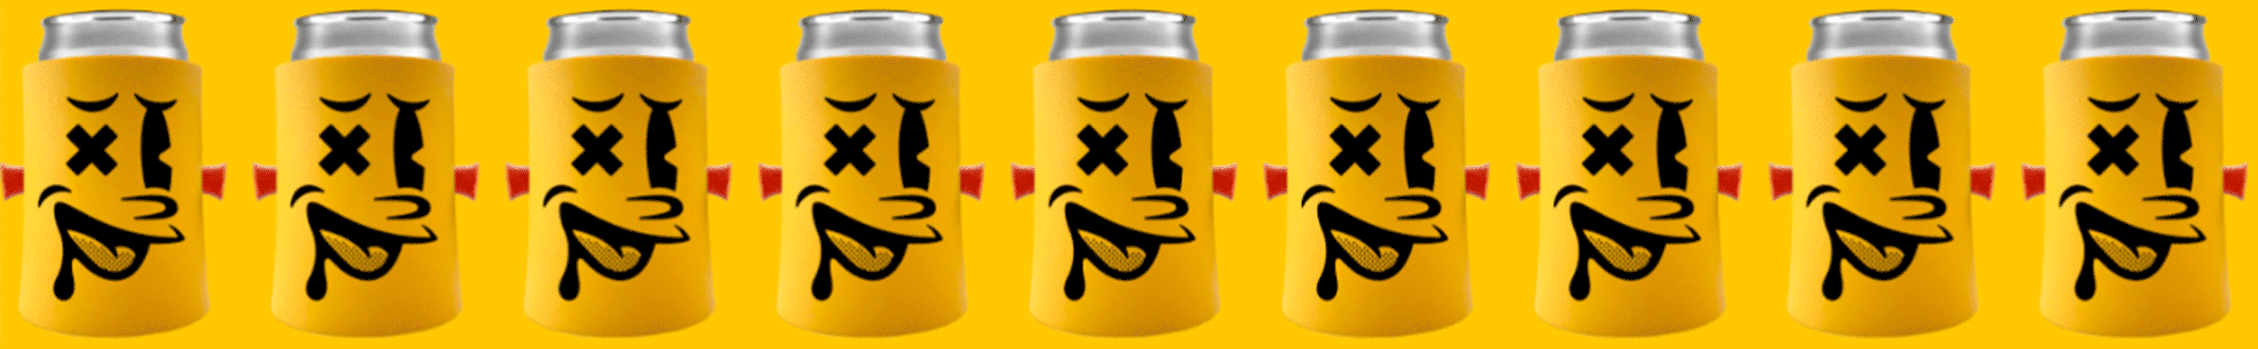 BeerPlugs animated gif